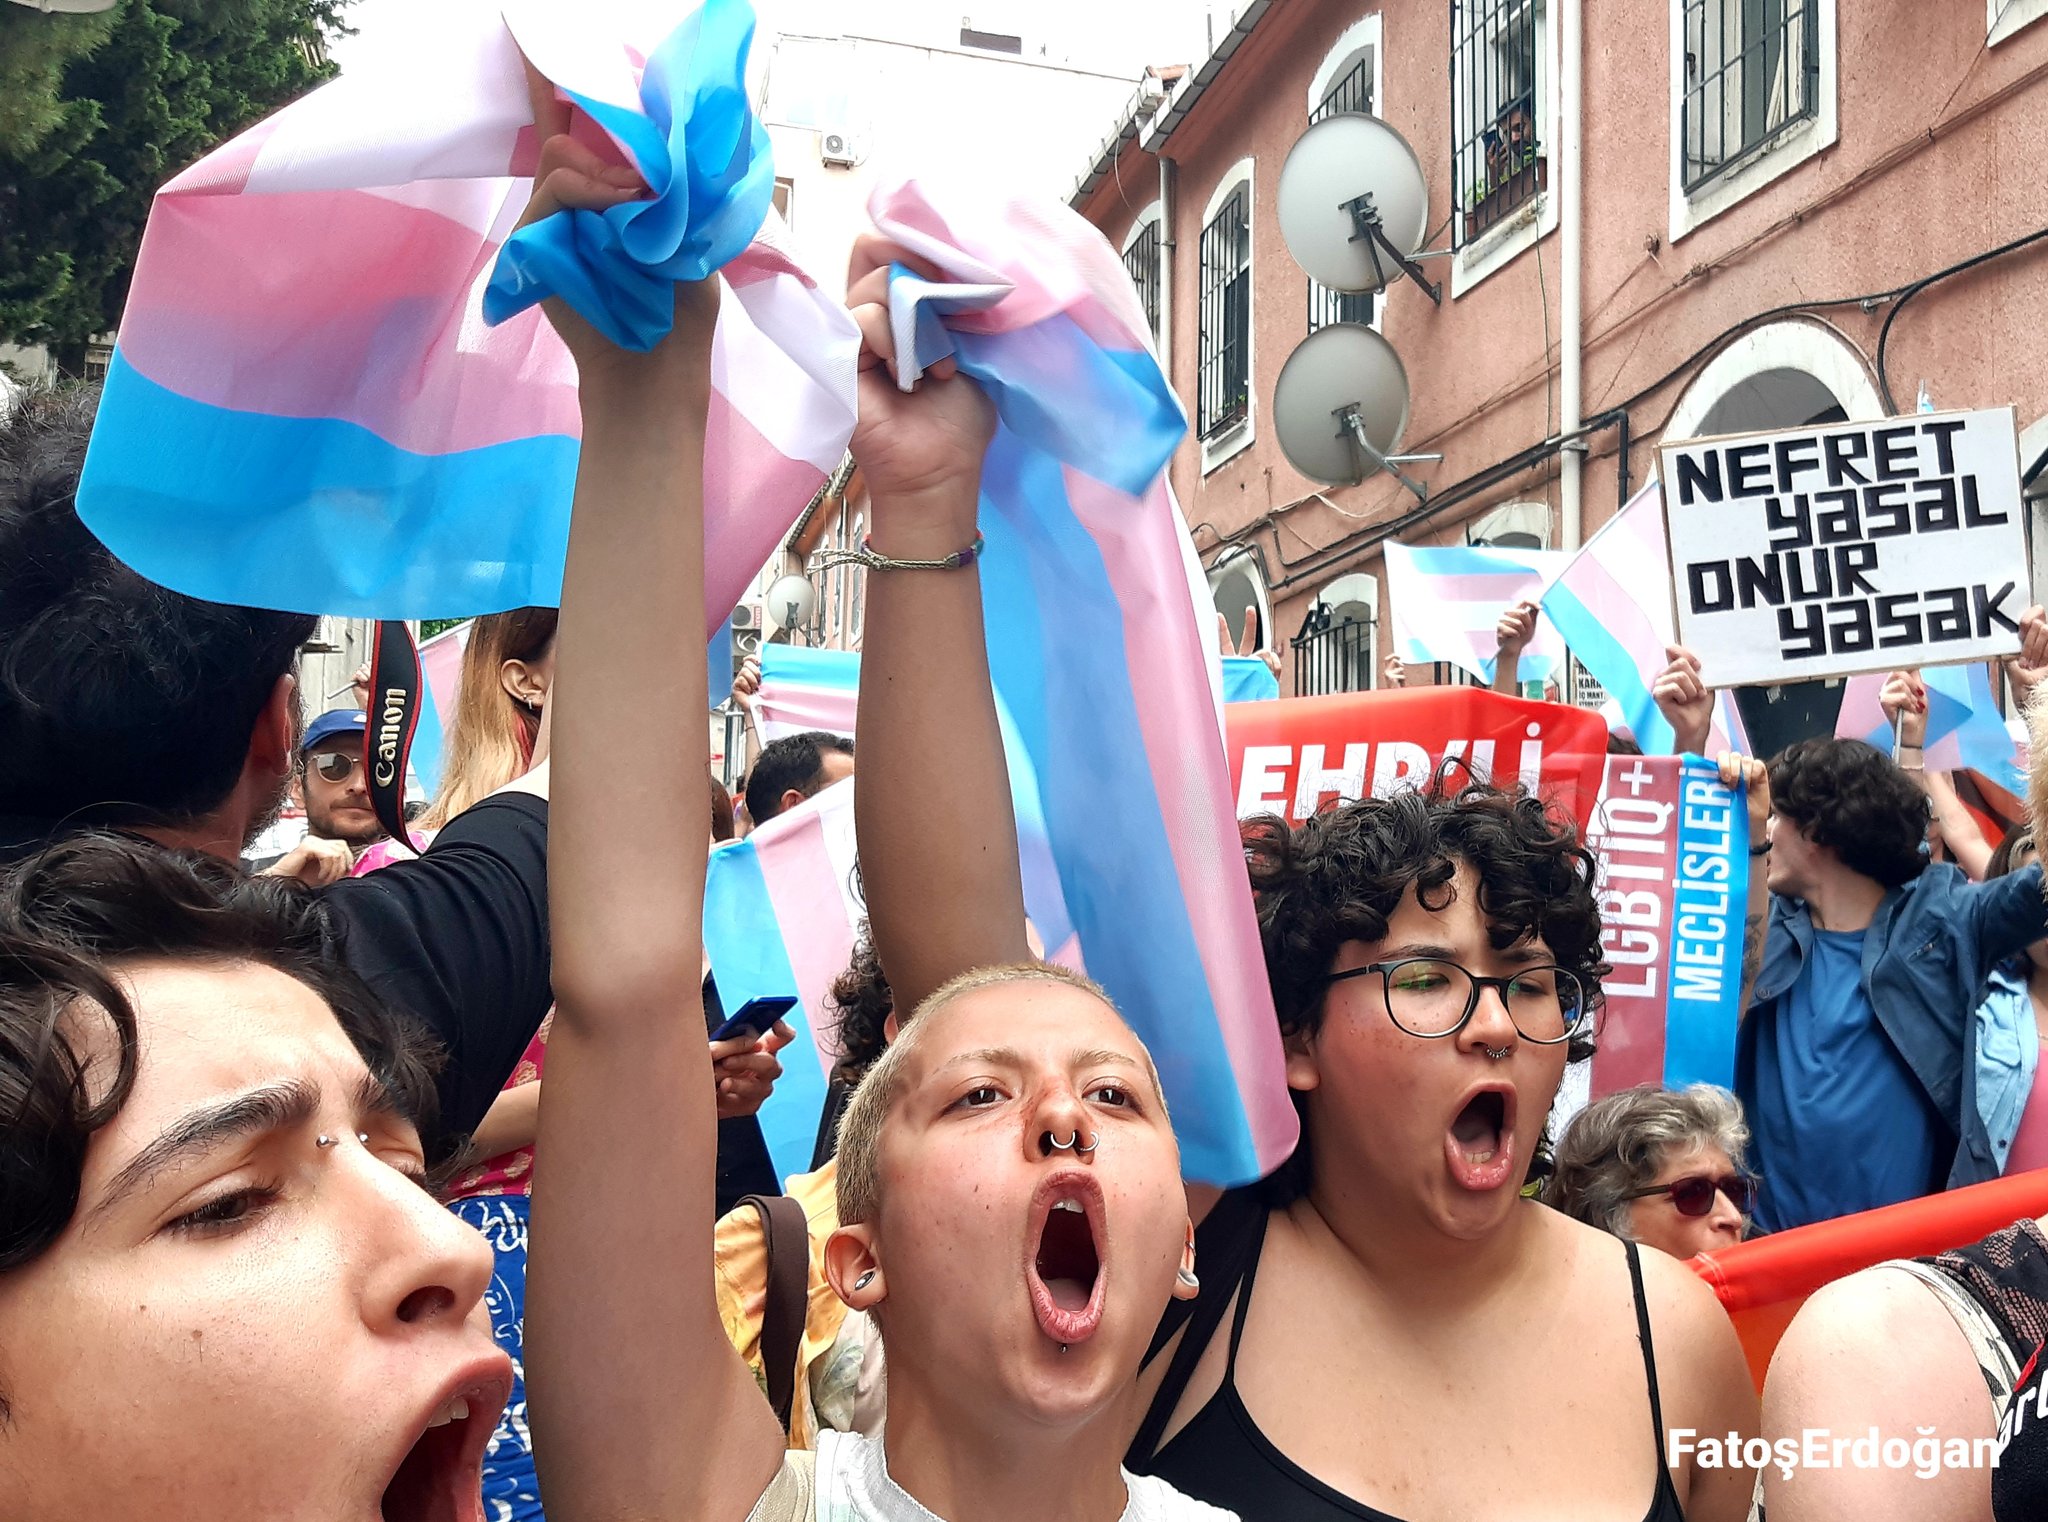 Trans Onur Yürüyüşü’nde gözaltına alınanlara dava açılmadı Kaos GL - LGBTİ+ Haber Portalı